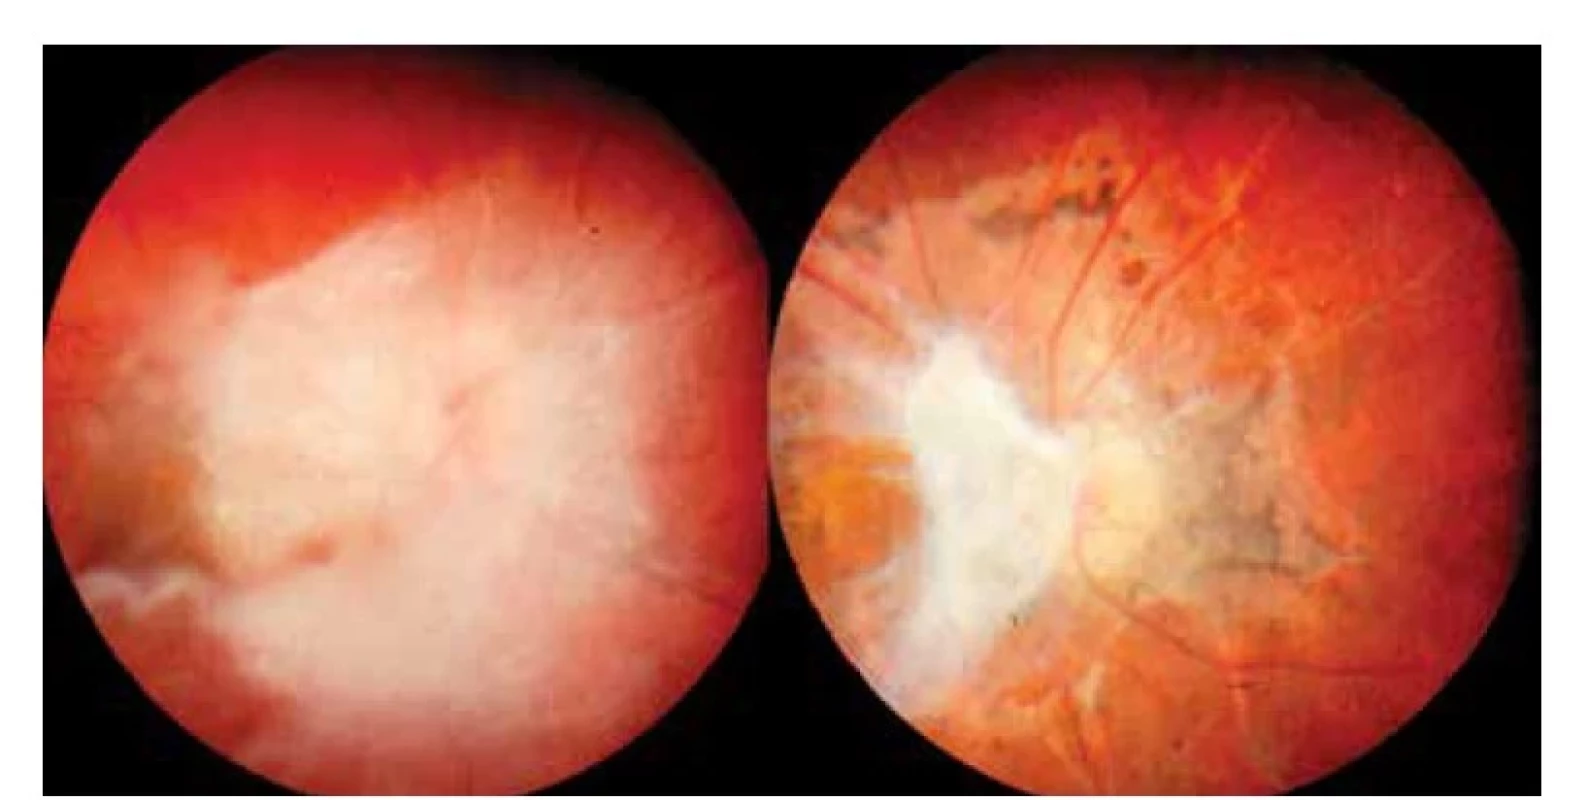 Obraz toxokarové neuropatie s vitritreální reakcí v okolí před celkovou
terapií<br>
Vpravo: Výrazné jizevnaté sítnicové změny s atrofií papily zrakového nervu a zbytky vitreální
membrány po kombinované léčbě o rok později